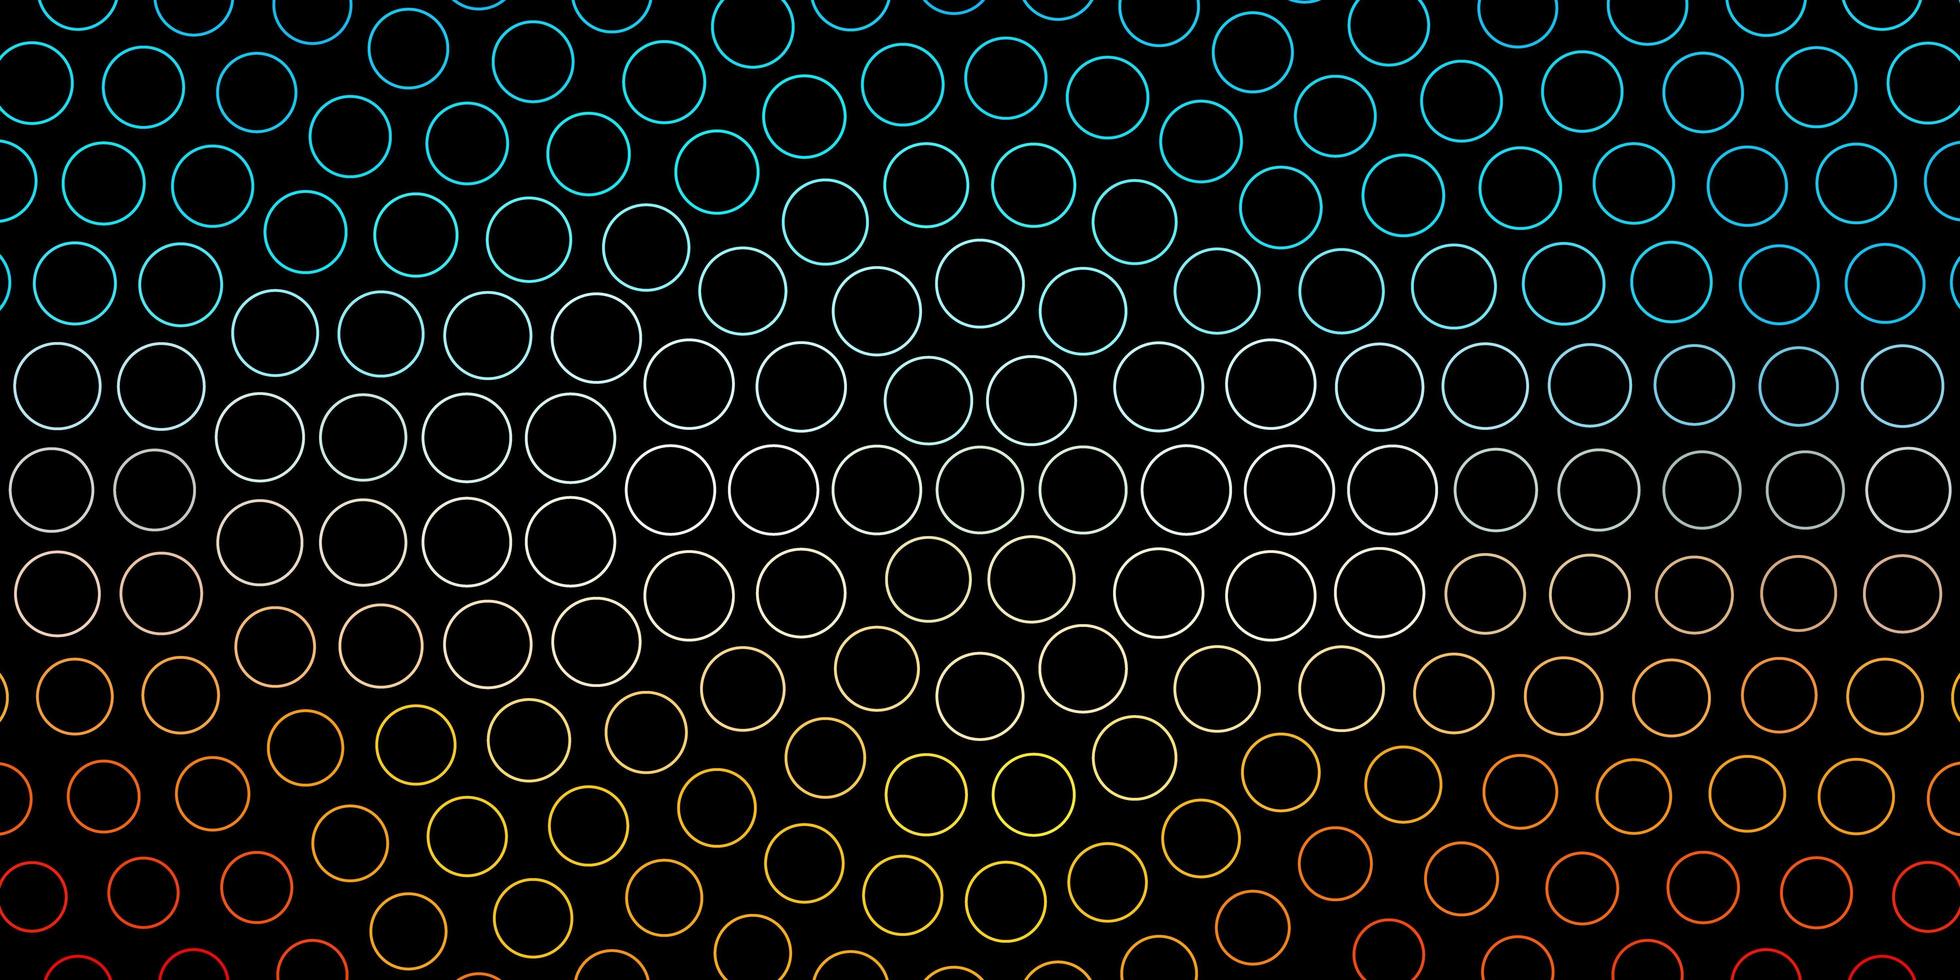 pano de fundo vector azul e amarelo escuro com círculos. discos coloridos abstratos em fundo gradiente simples. padrão para livretos, folhetos.